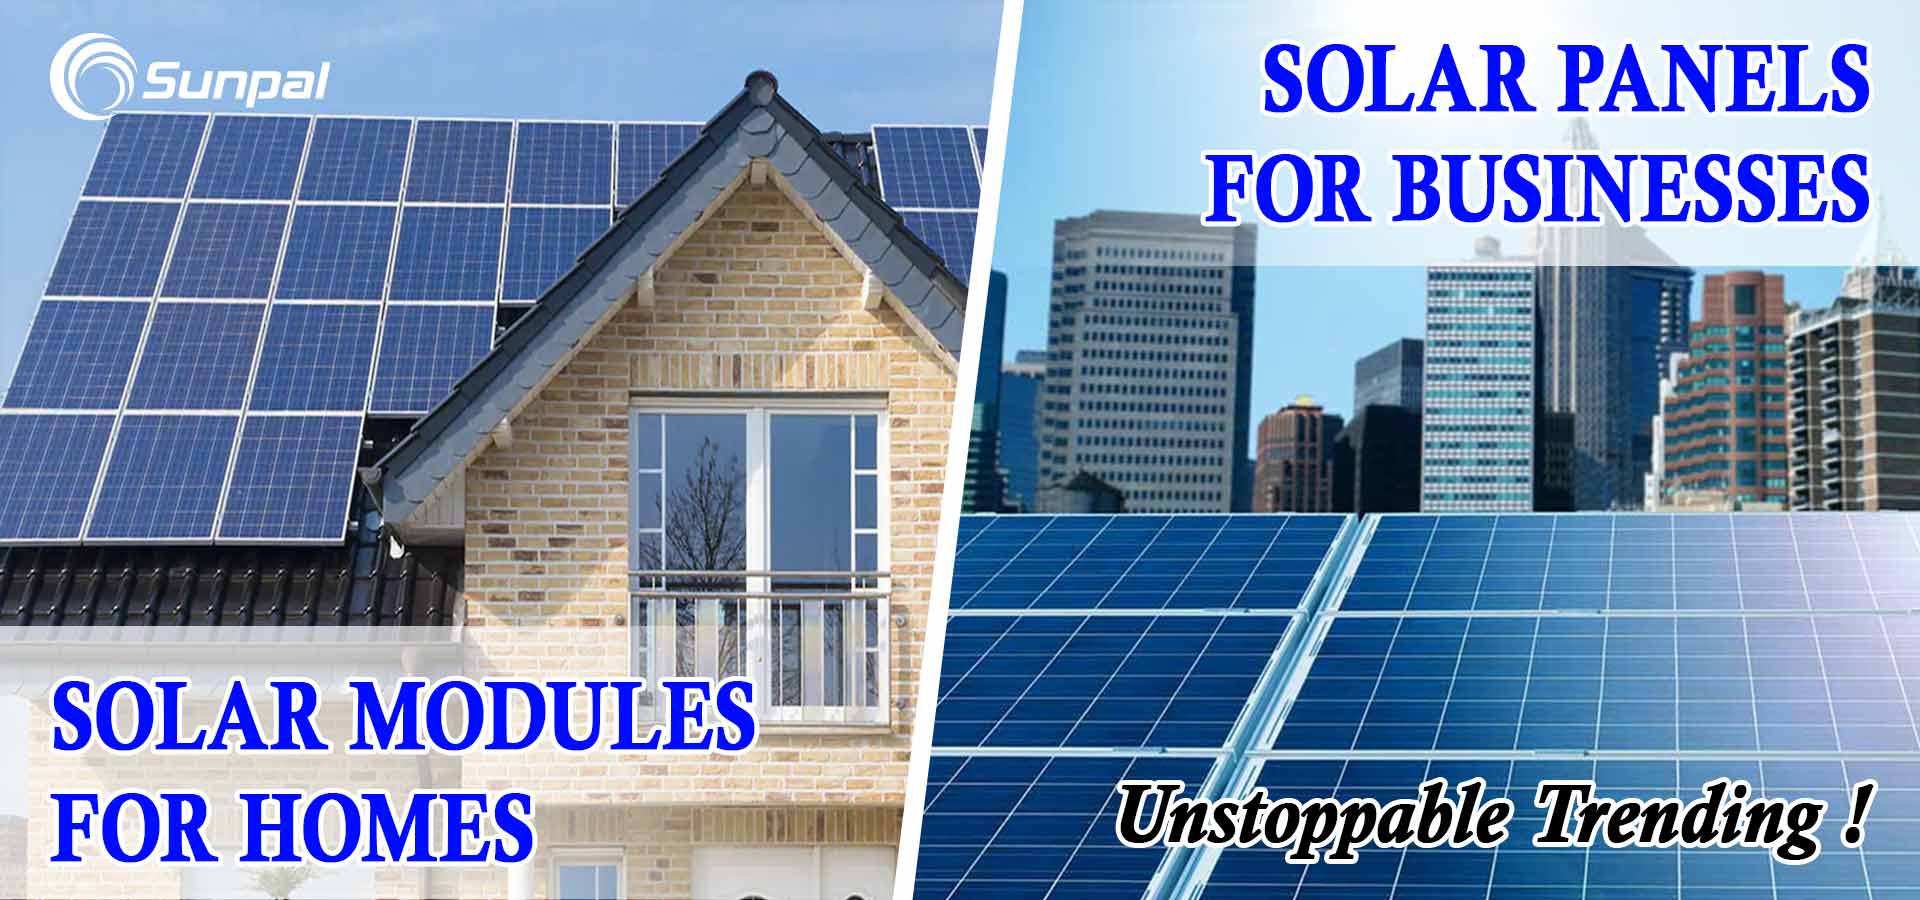 Hausbesitzer und Unternehmer: Nutzen Sie Sonnenkollektoren – warum Sie das tun sollten
        